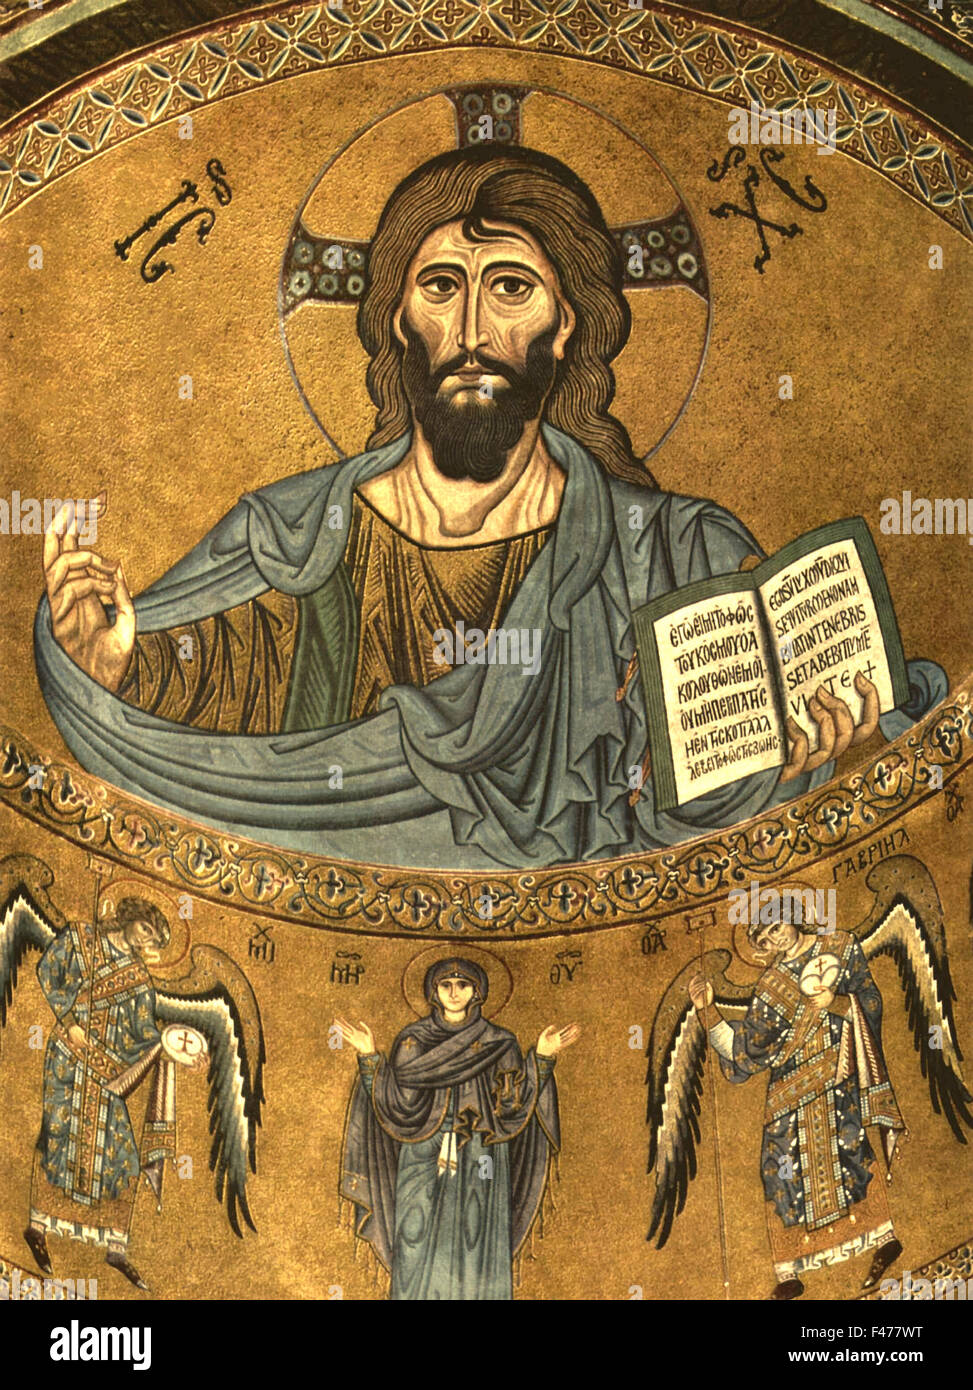 5780. Gesù Cristo da mosaico dell'abside del 12th. C. chiesa in Cefalu Cathedral in Sicilia. Foto Stock